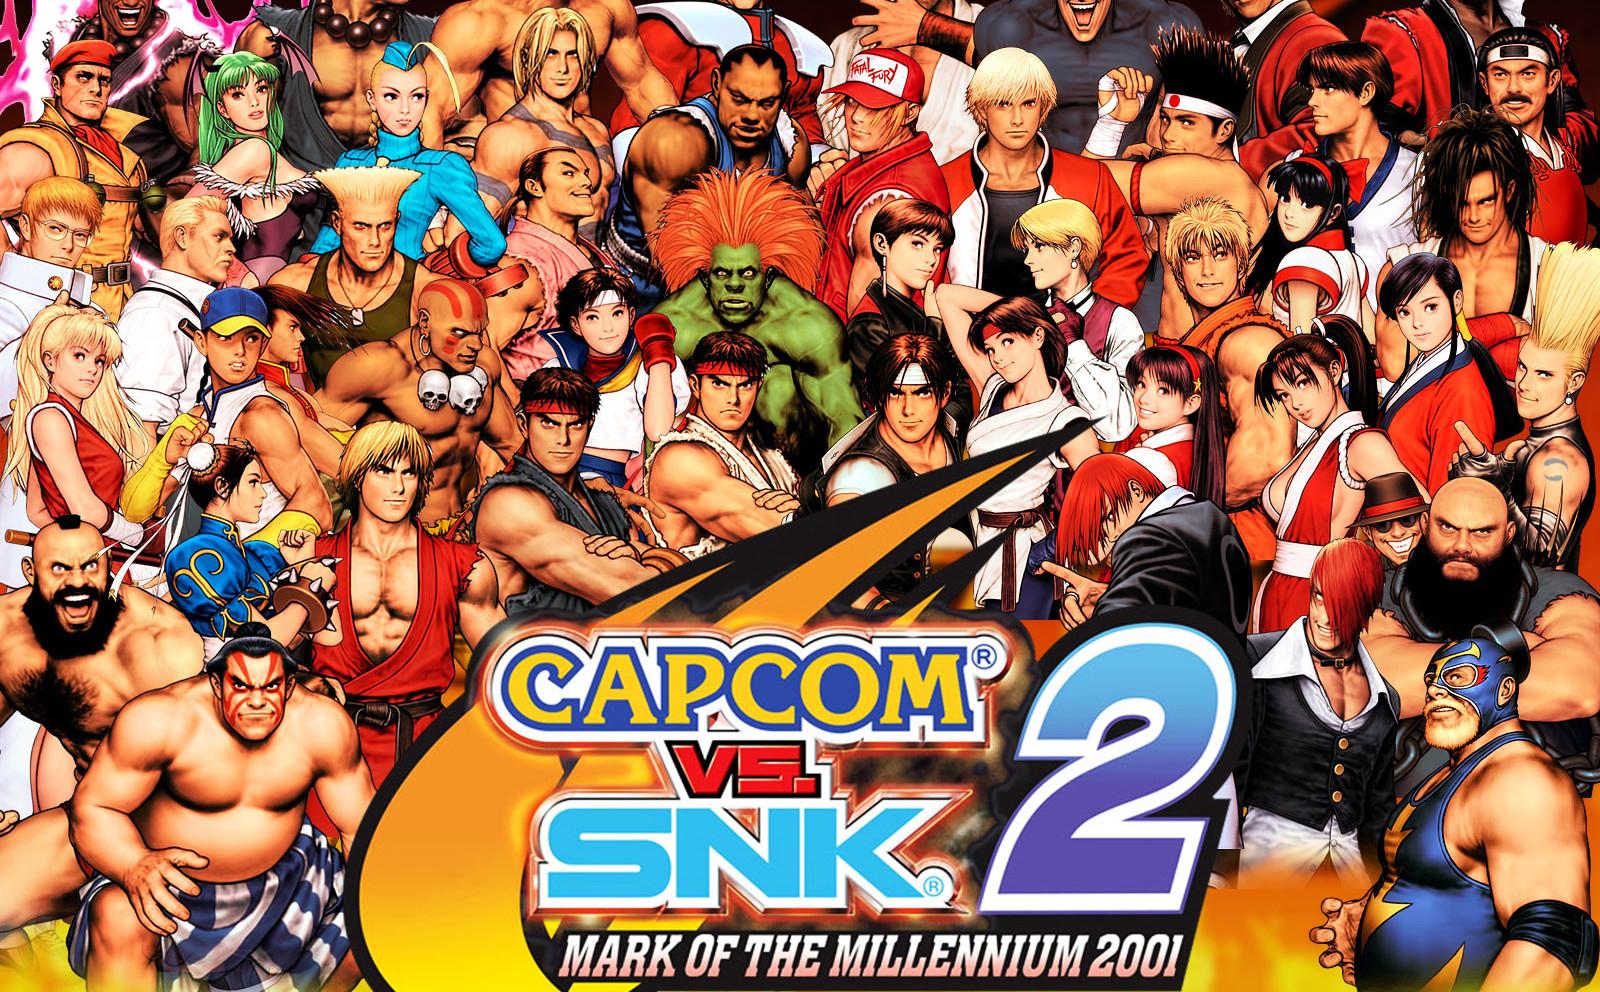 1600 x 992 · jpeg - [48+] Capcom vs SNK 2 Wallpaper on WallpaperSafari